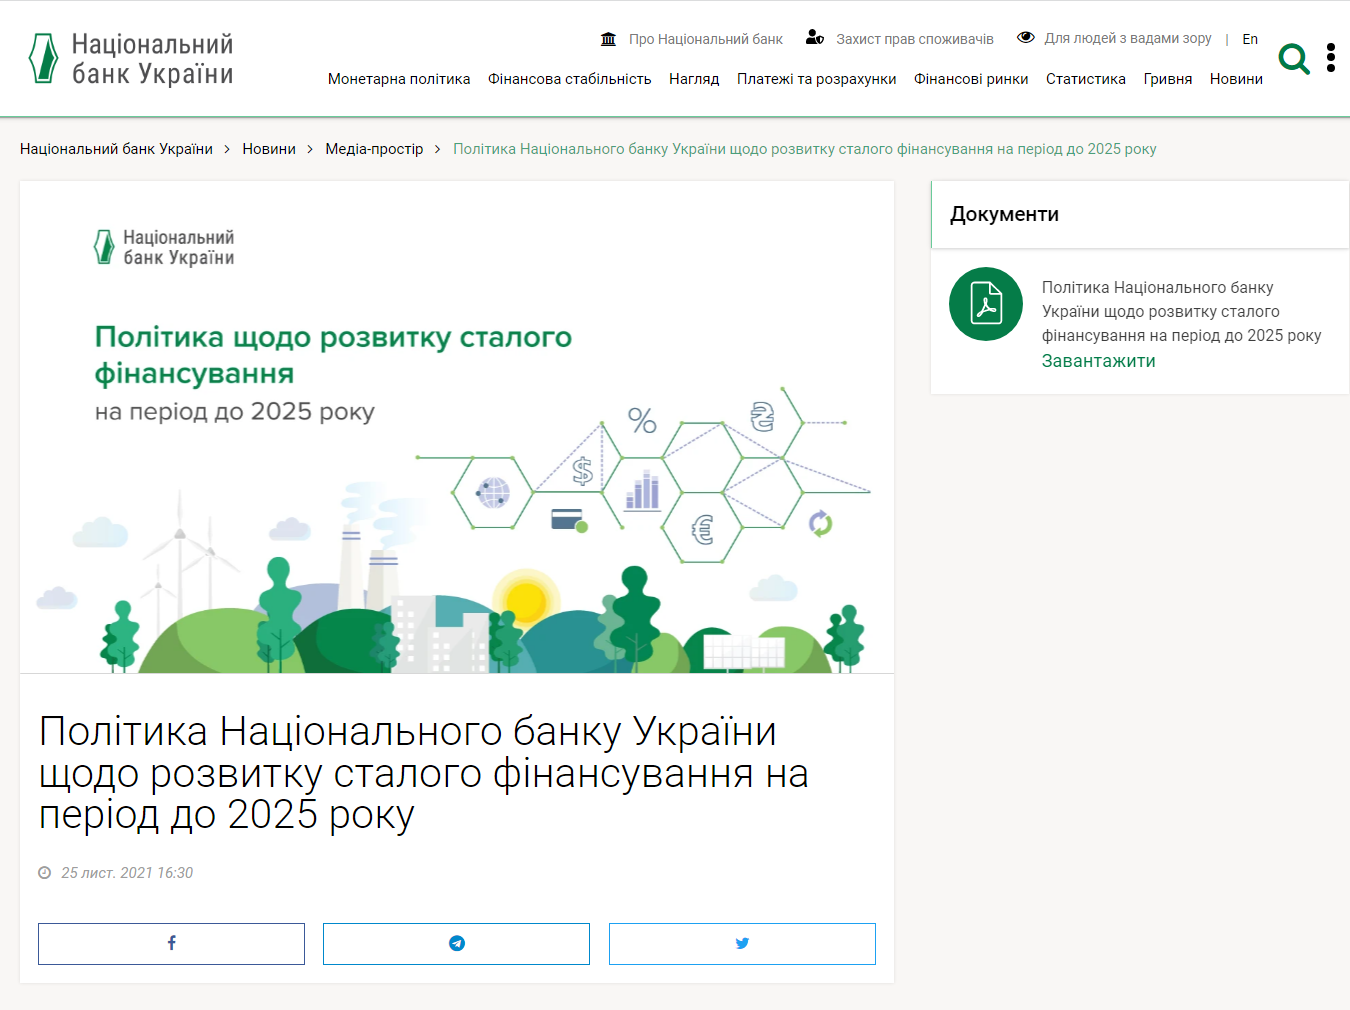 https://bank.gov.ua/ua/news/all/politika-natsionalnogo-banku-ukrayini-schodo-rozvitku-stalogo-finansuvannya-na-period-do-2025-roku